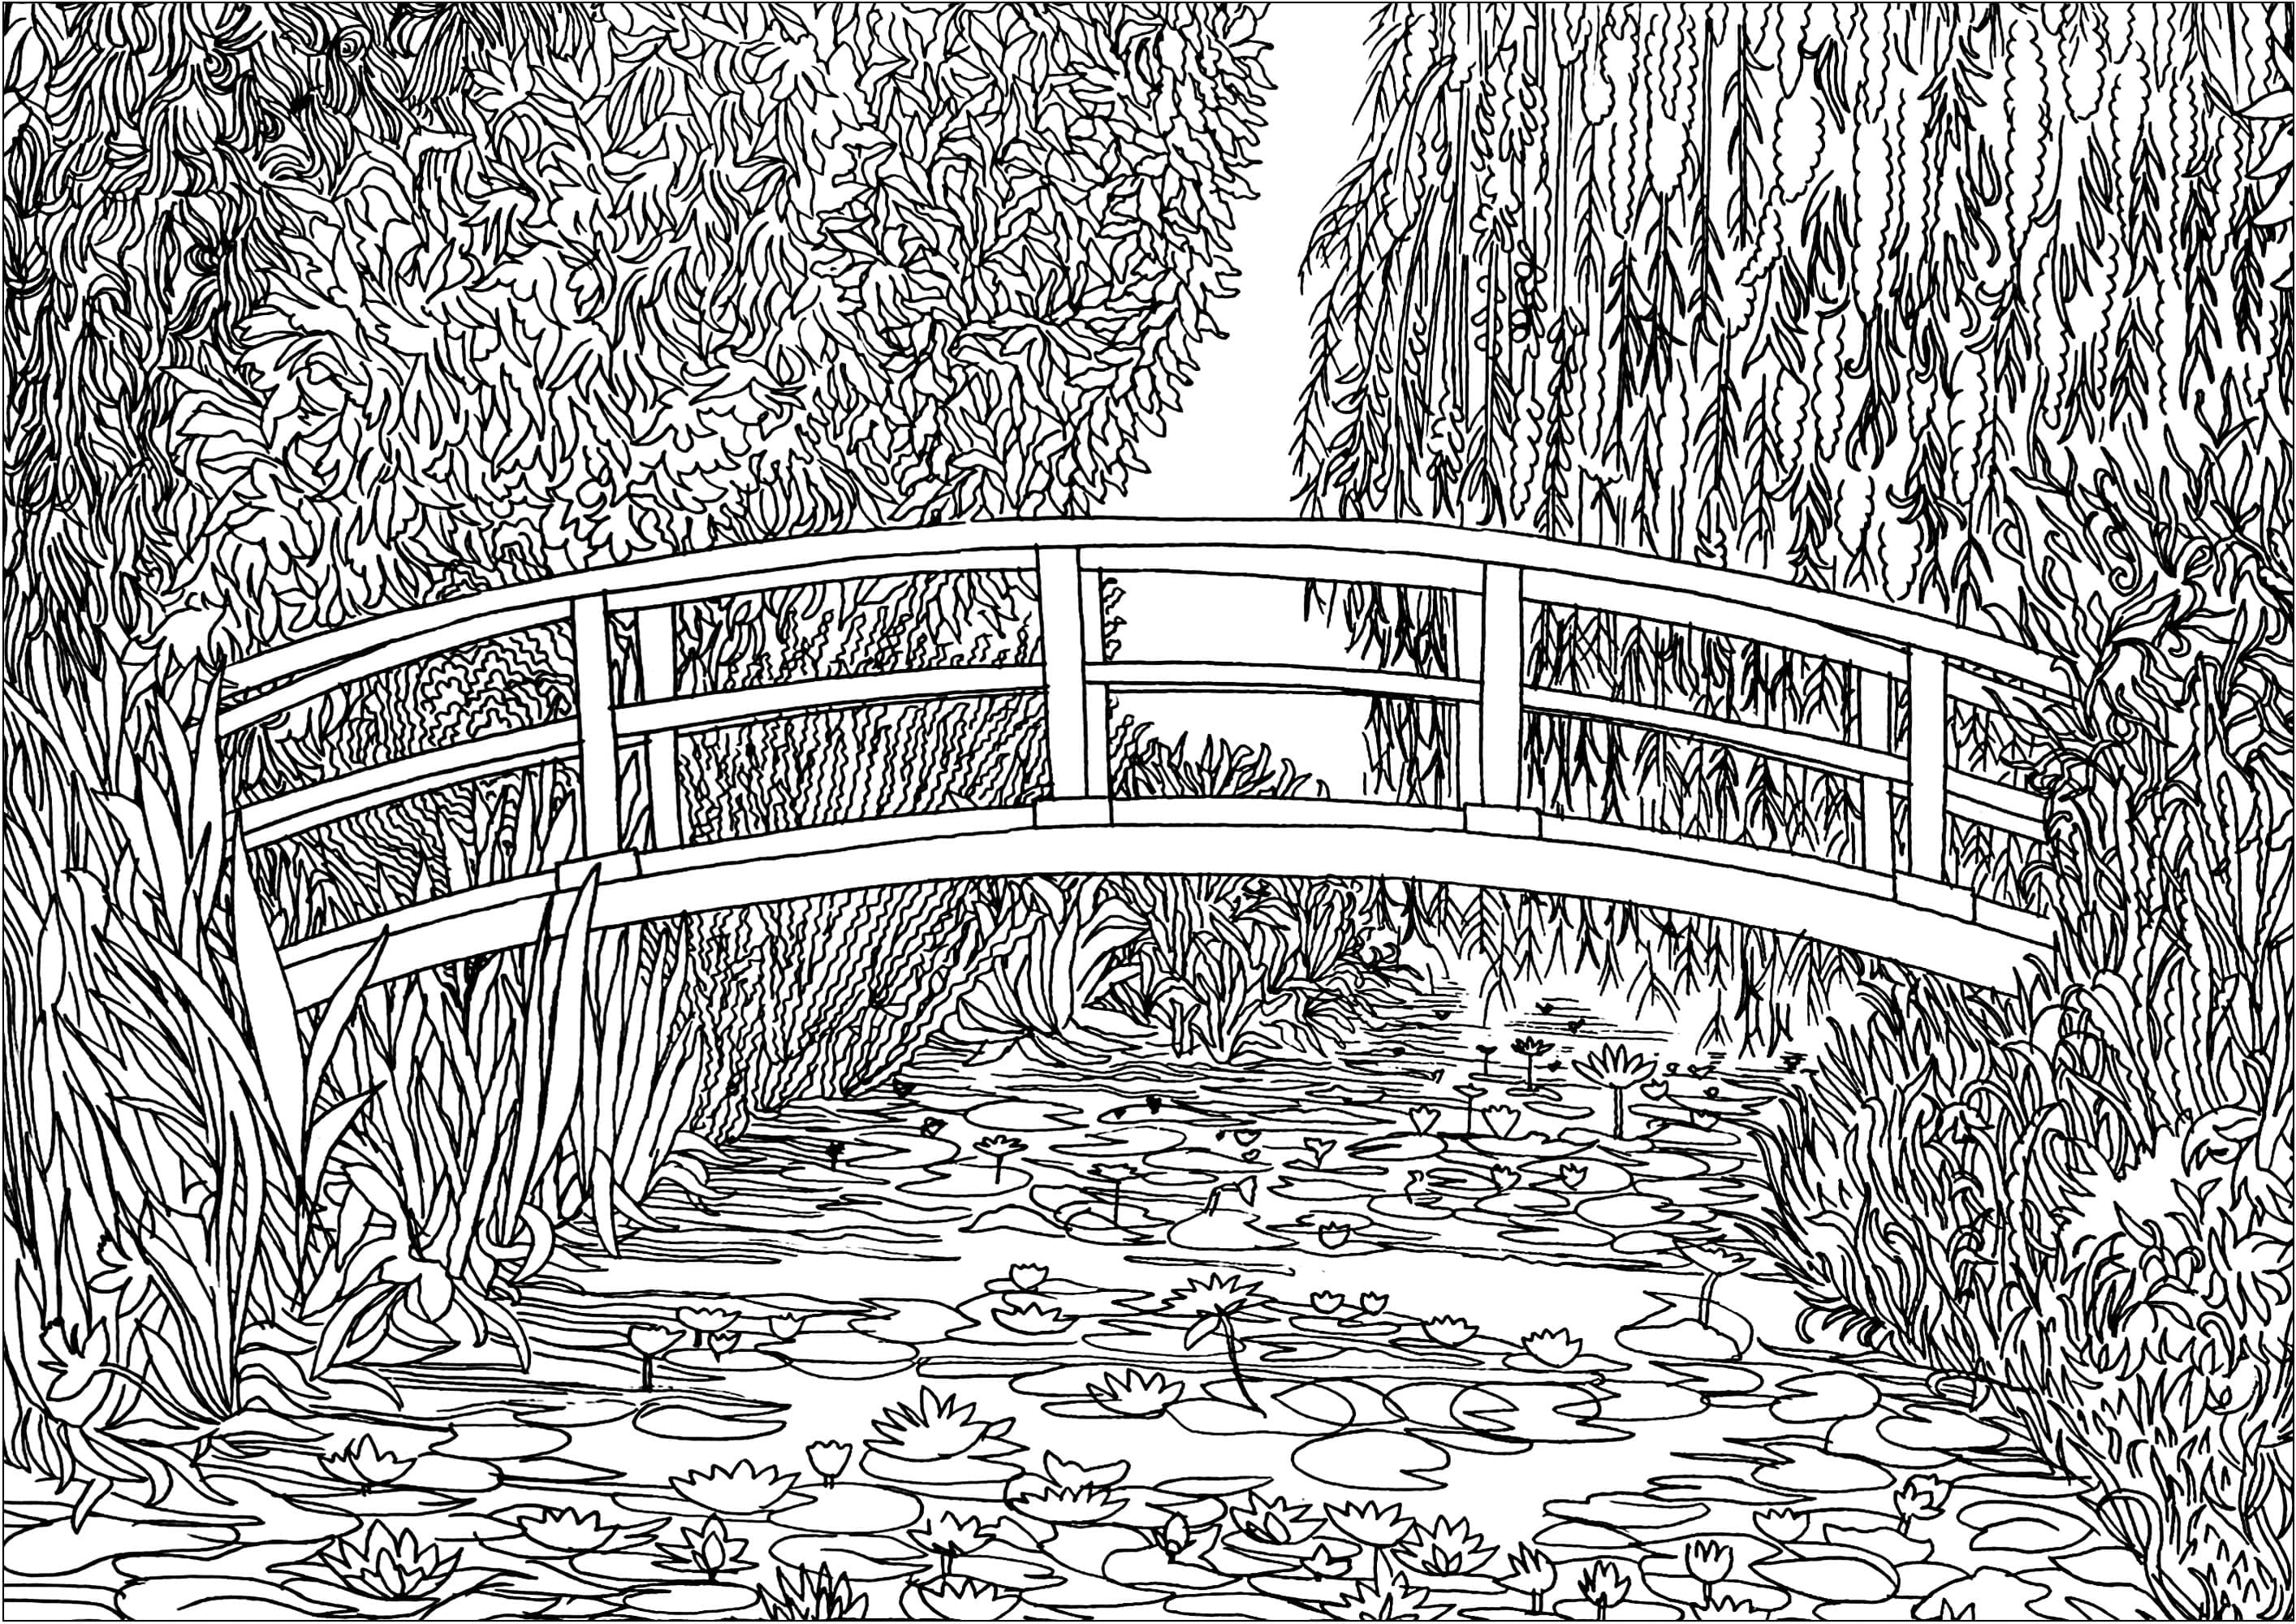 Coloração baseada em 'Le bassin aux nymphéas' (1899) de Claude Monet. Em 1893, Monet, pintor mas também horticultor apaixonado, comprou um terreno com um lago perto da sua propriedade em Giverny, com a intenção de construir algo 'para o prazer dos olhos e também para motivos para pintar'. O resultado foi a sua série de pinturas que retratam este magnífico lago de nenúfares.